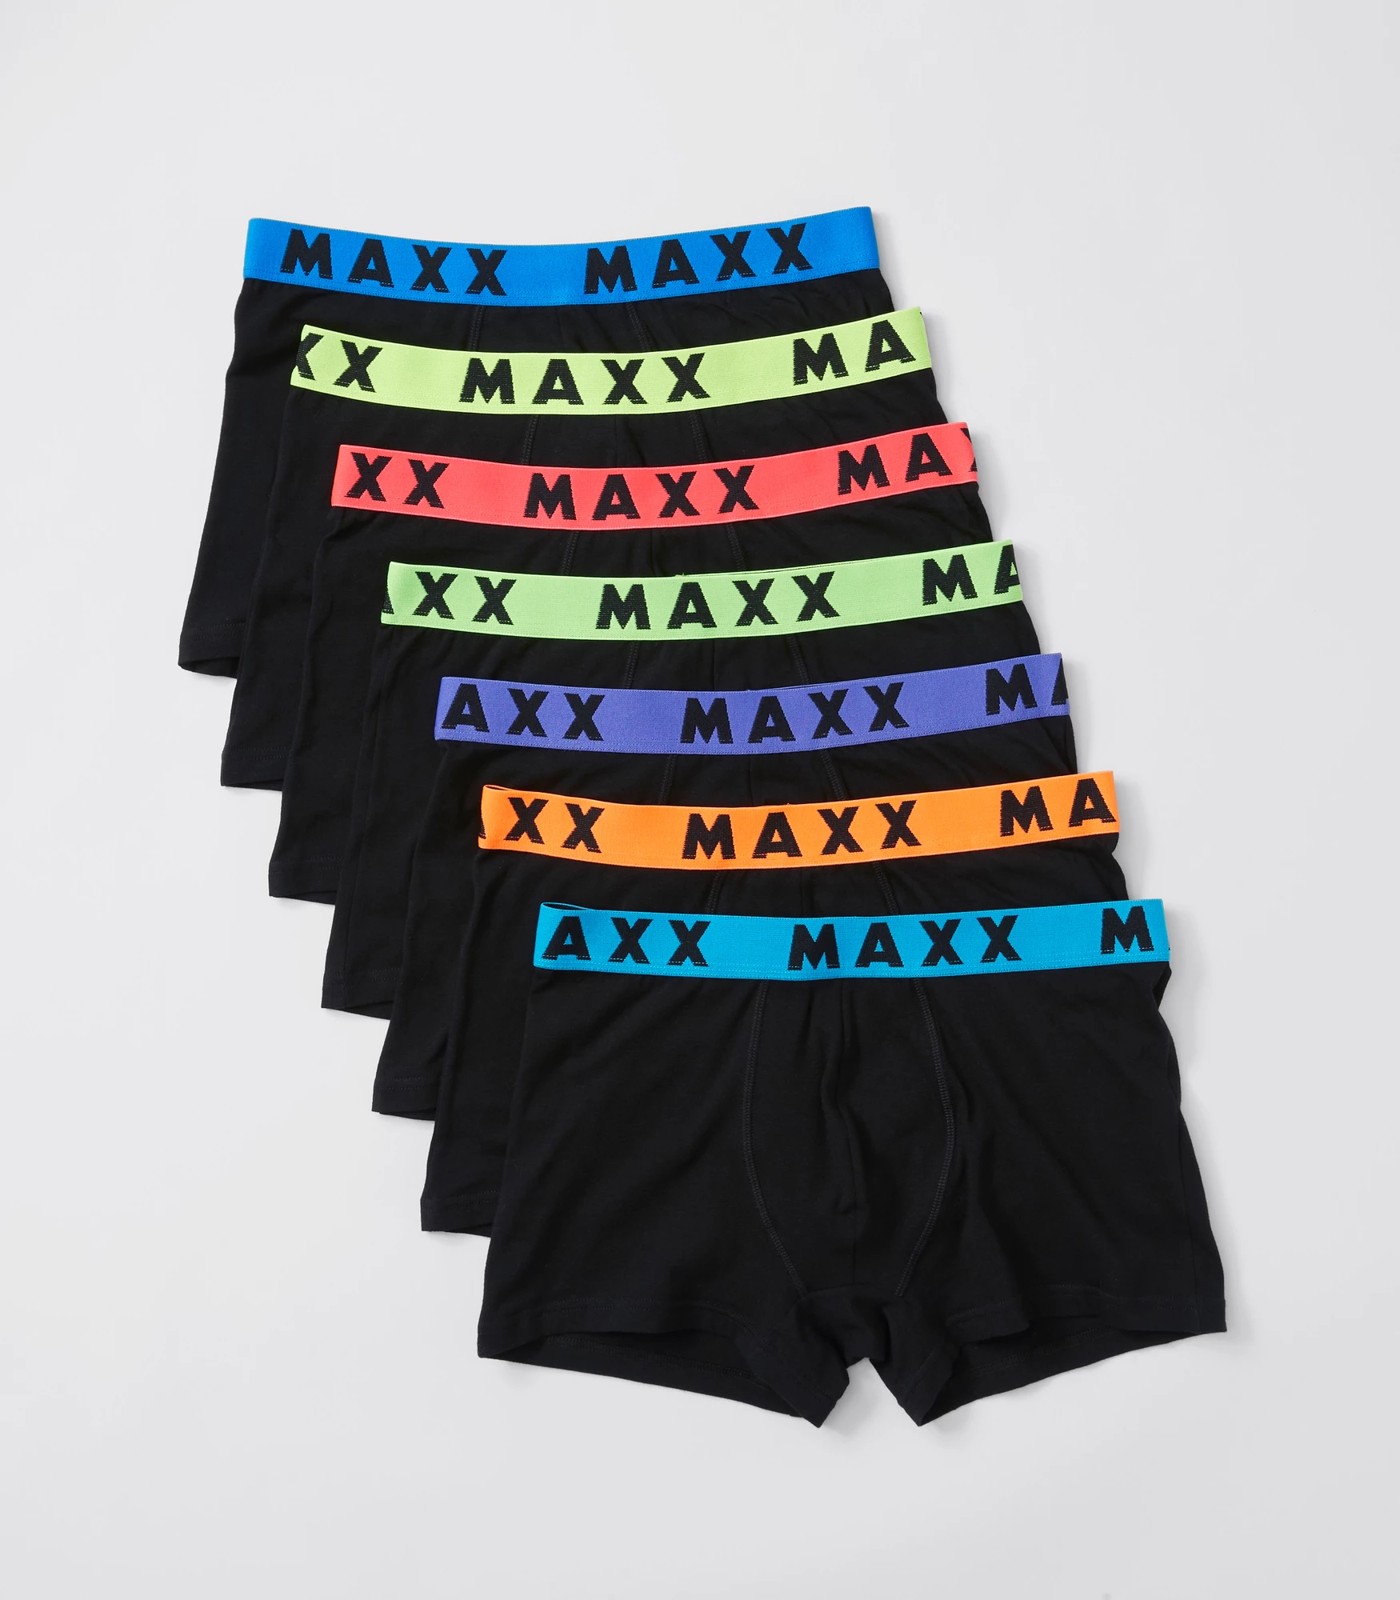 Maxx Men's 7 Pack Trunks